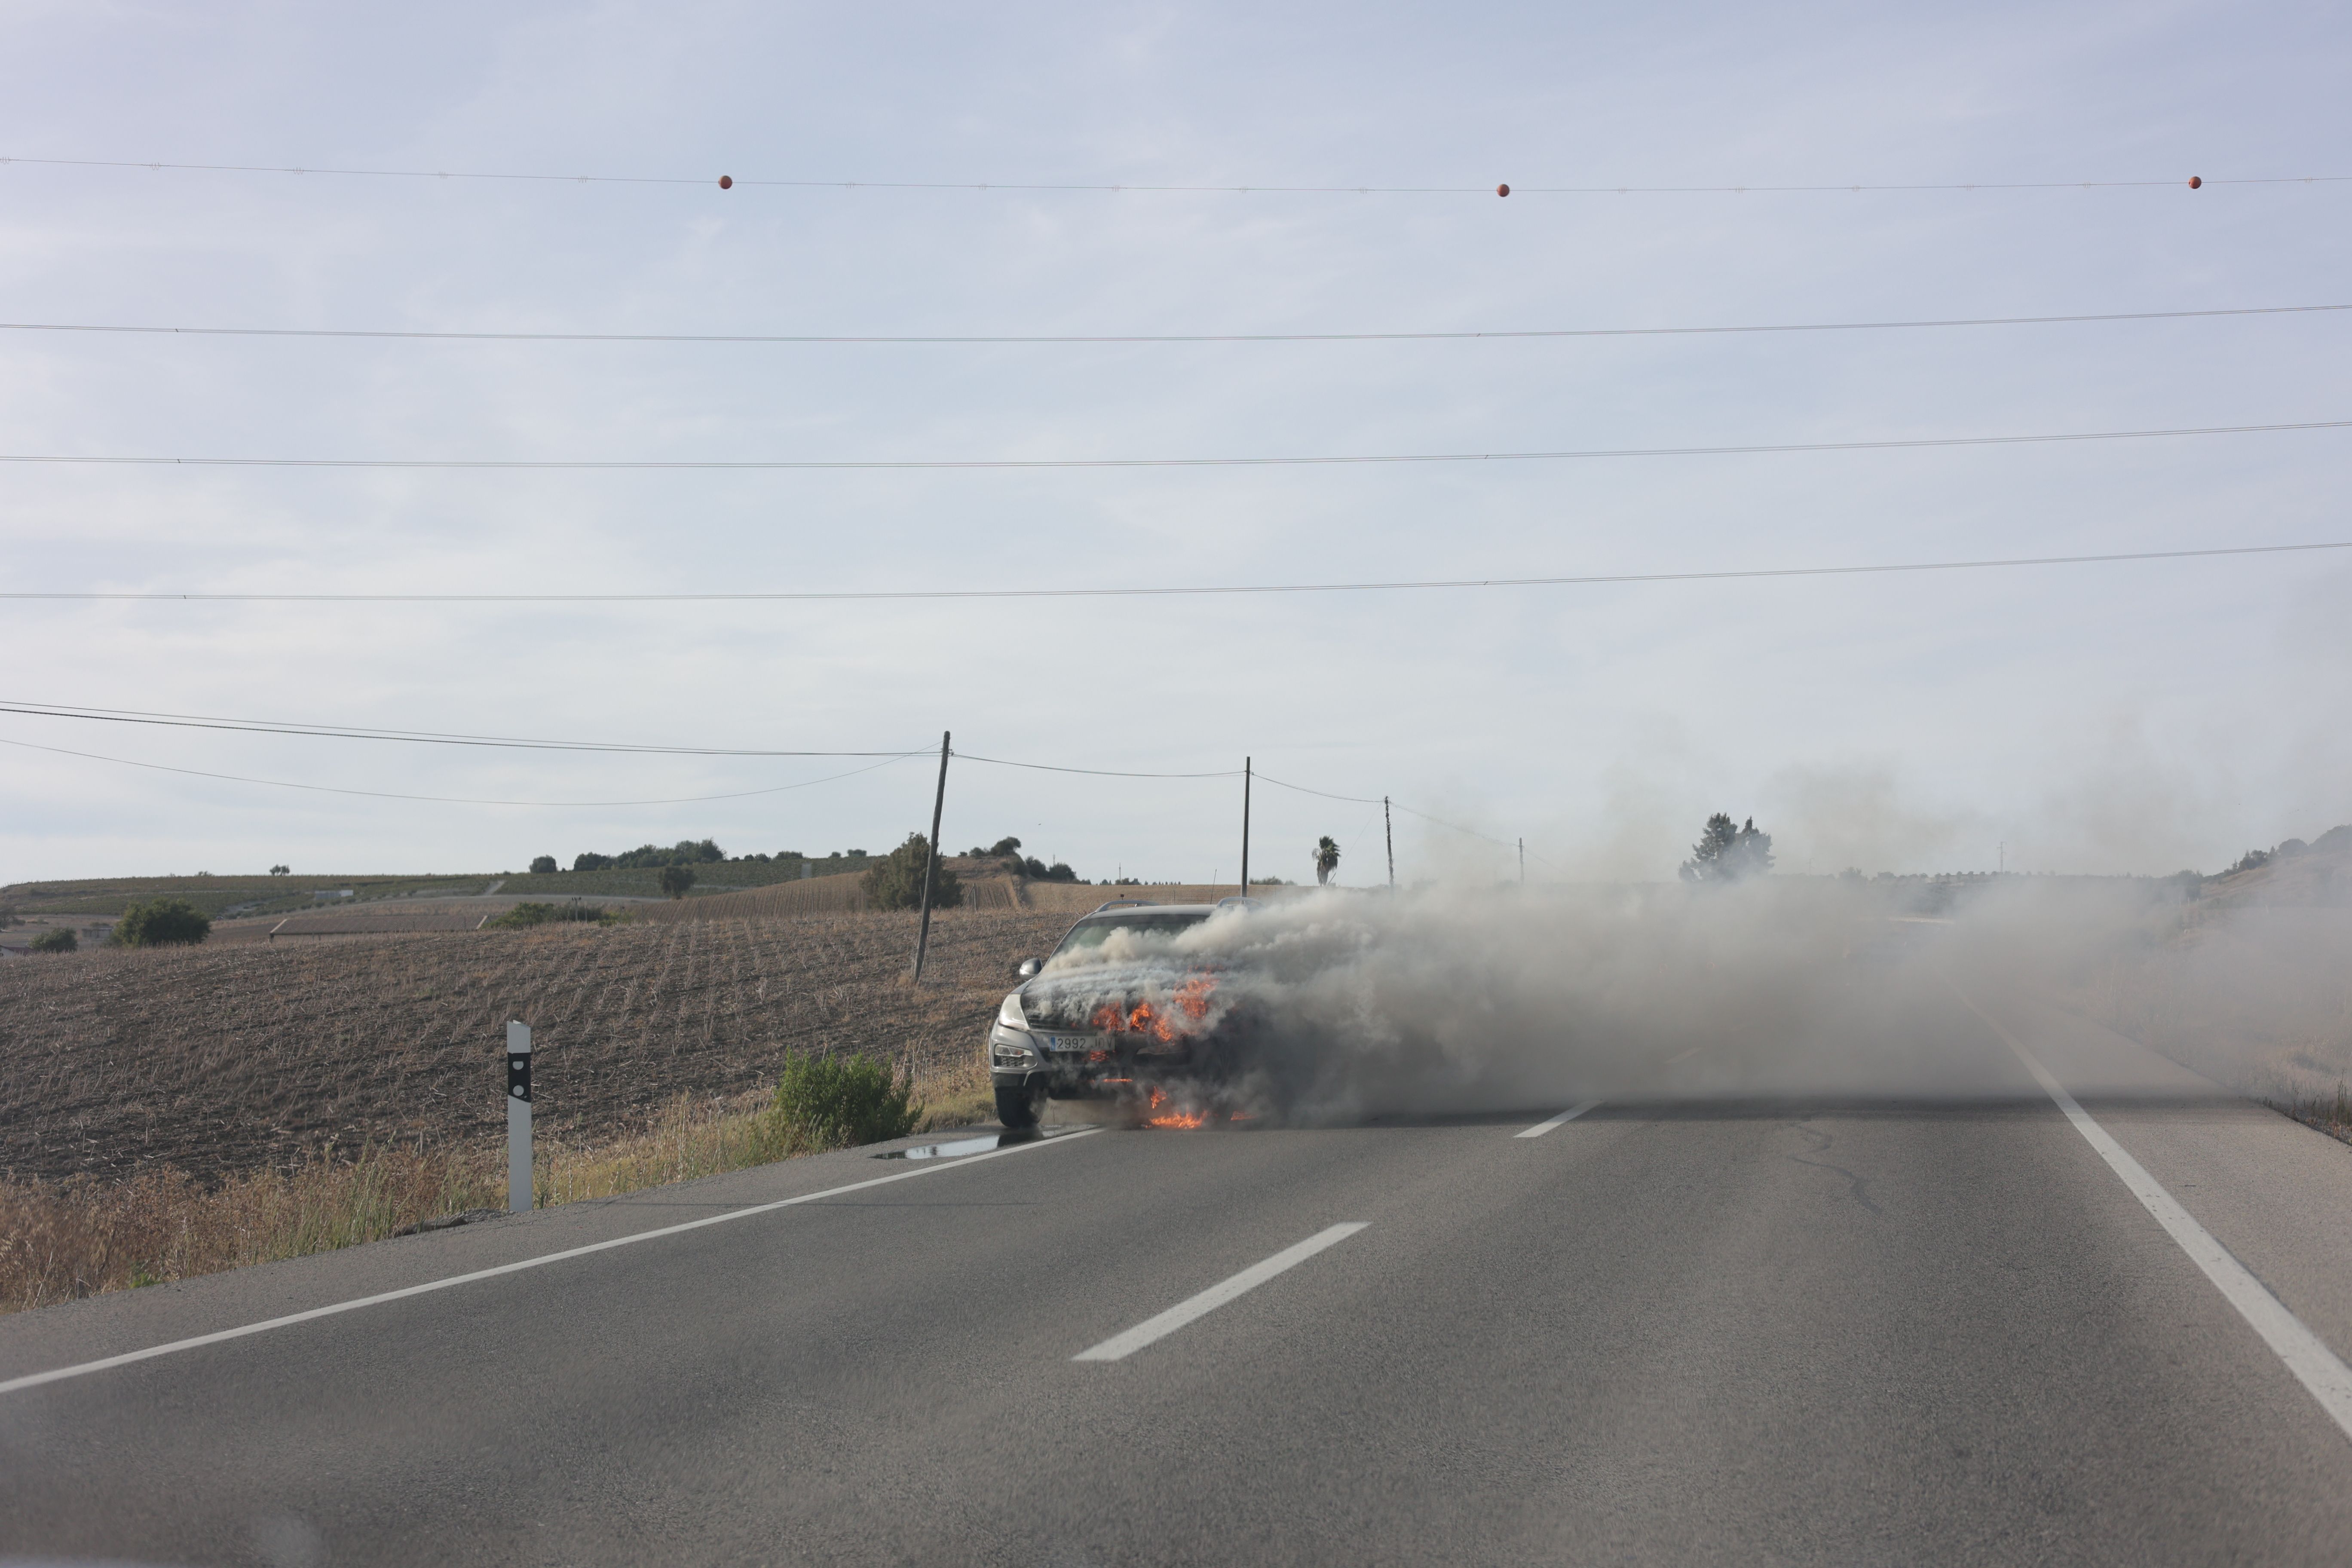 El vehículo ardiendo en la carretera entre Trebujena y Jerez.